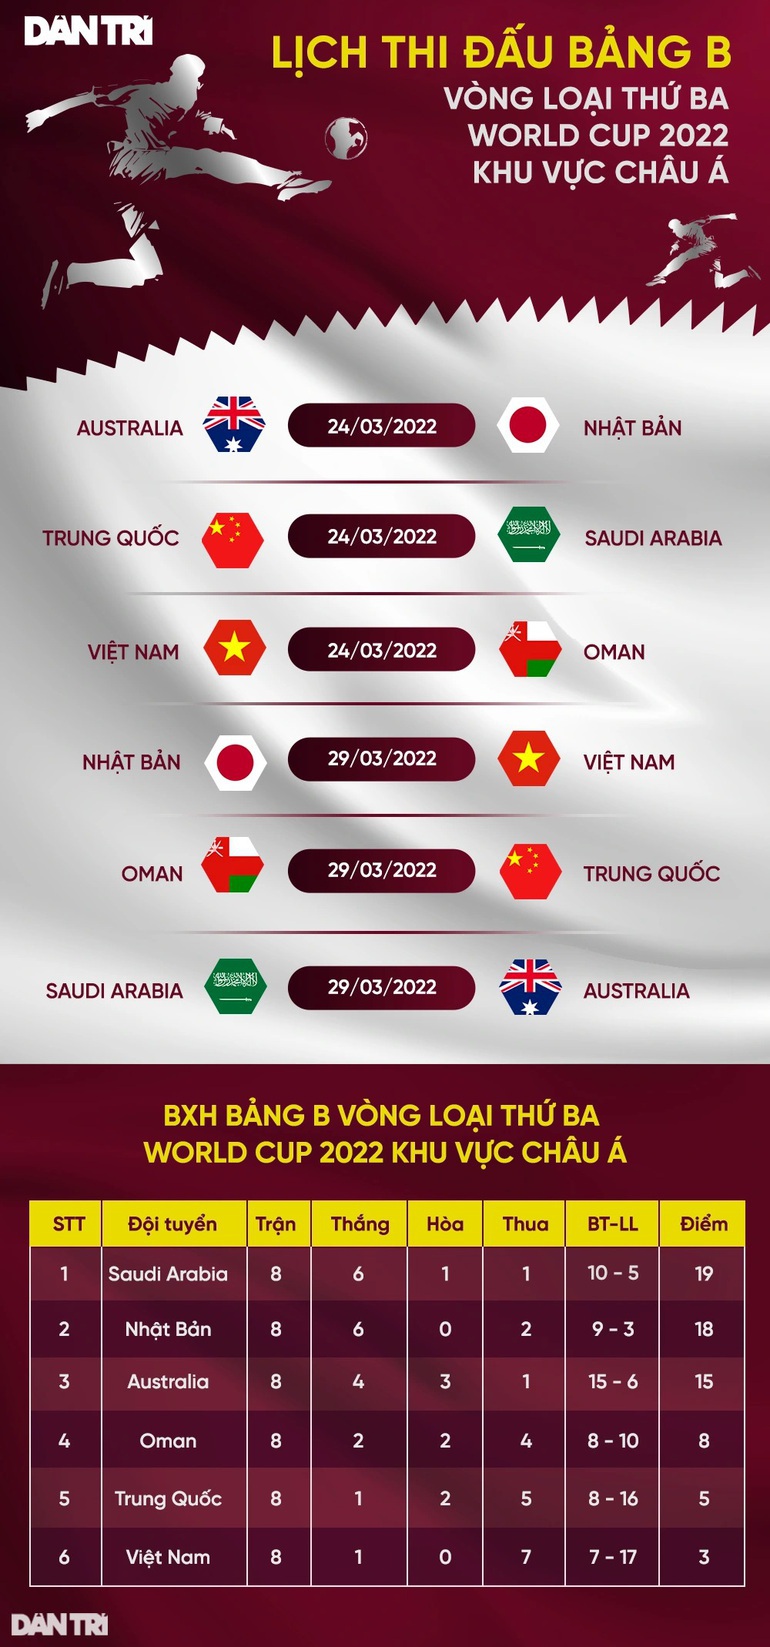 Các tuyển thủ Việt Nam hiện ra sao trước ngày đấu Oman, Nhật Bản? - Ảnh 3.